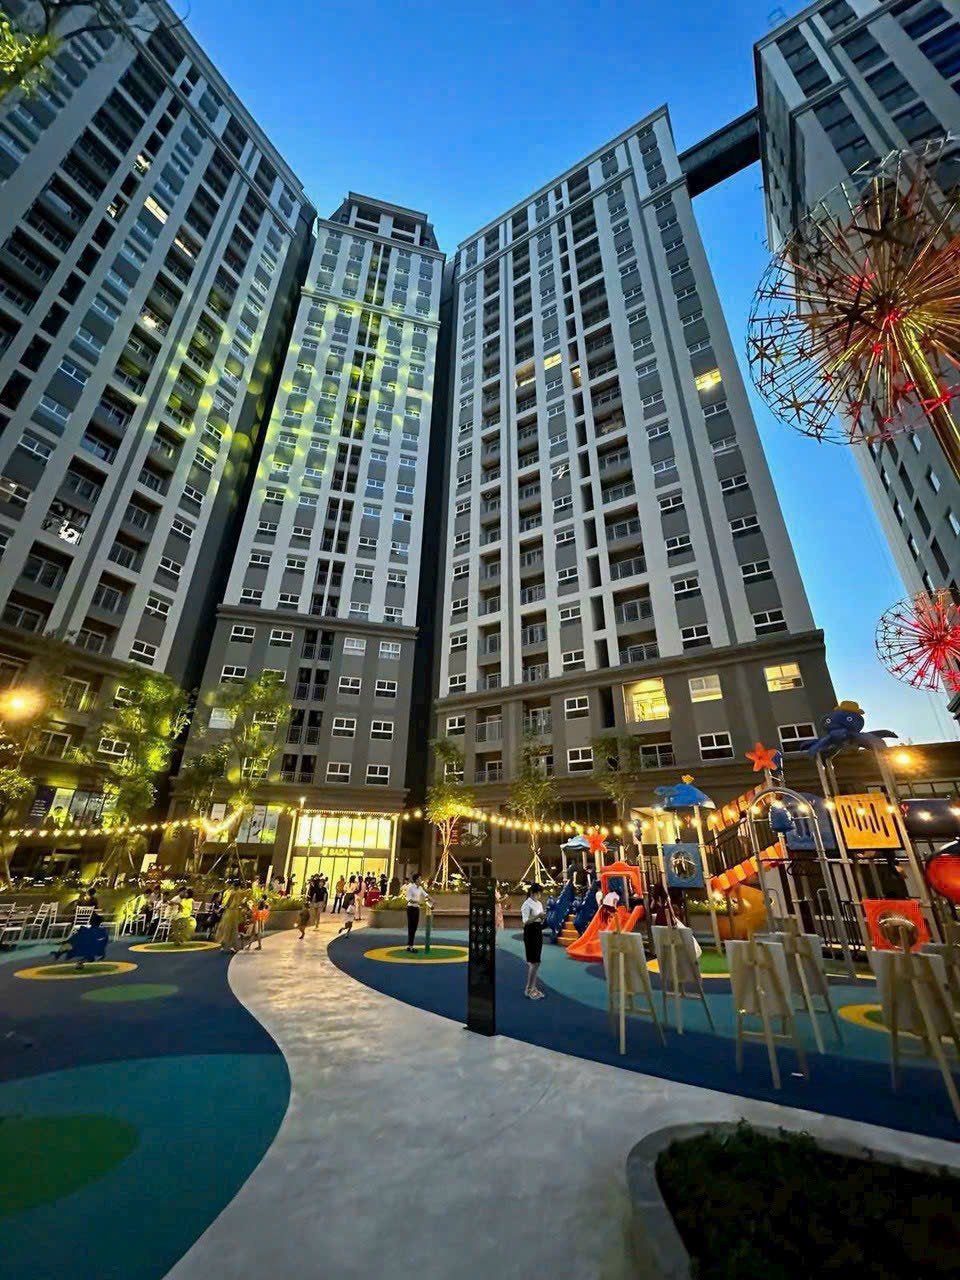 BÁN ĐỢT CUỐI-GIÁ RẺ NHẤT 590 triệu/ căn hộ Hàn Quốc- trung tâm Tp Hạ Long - giá chỉ từ 26tr/m2 -Full nội thất 1